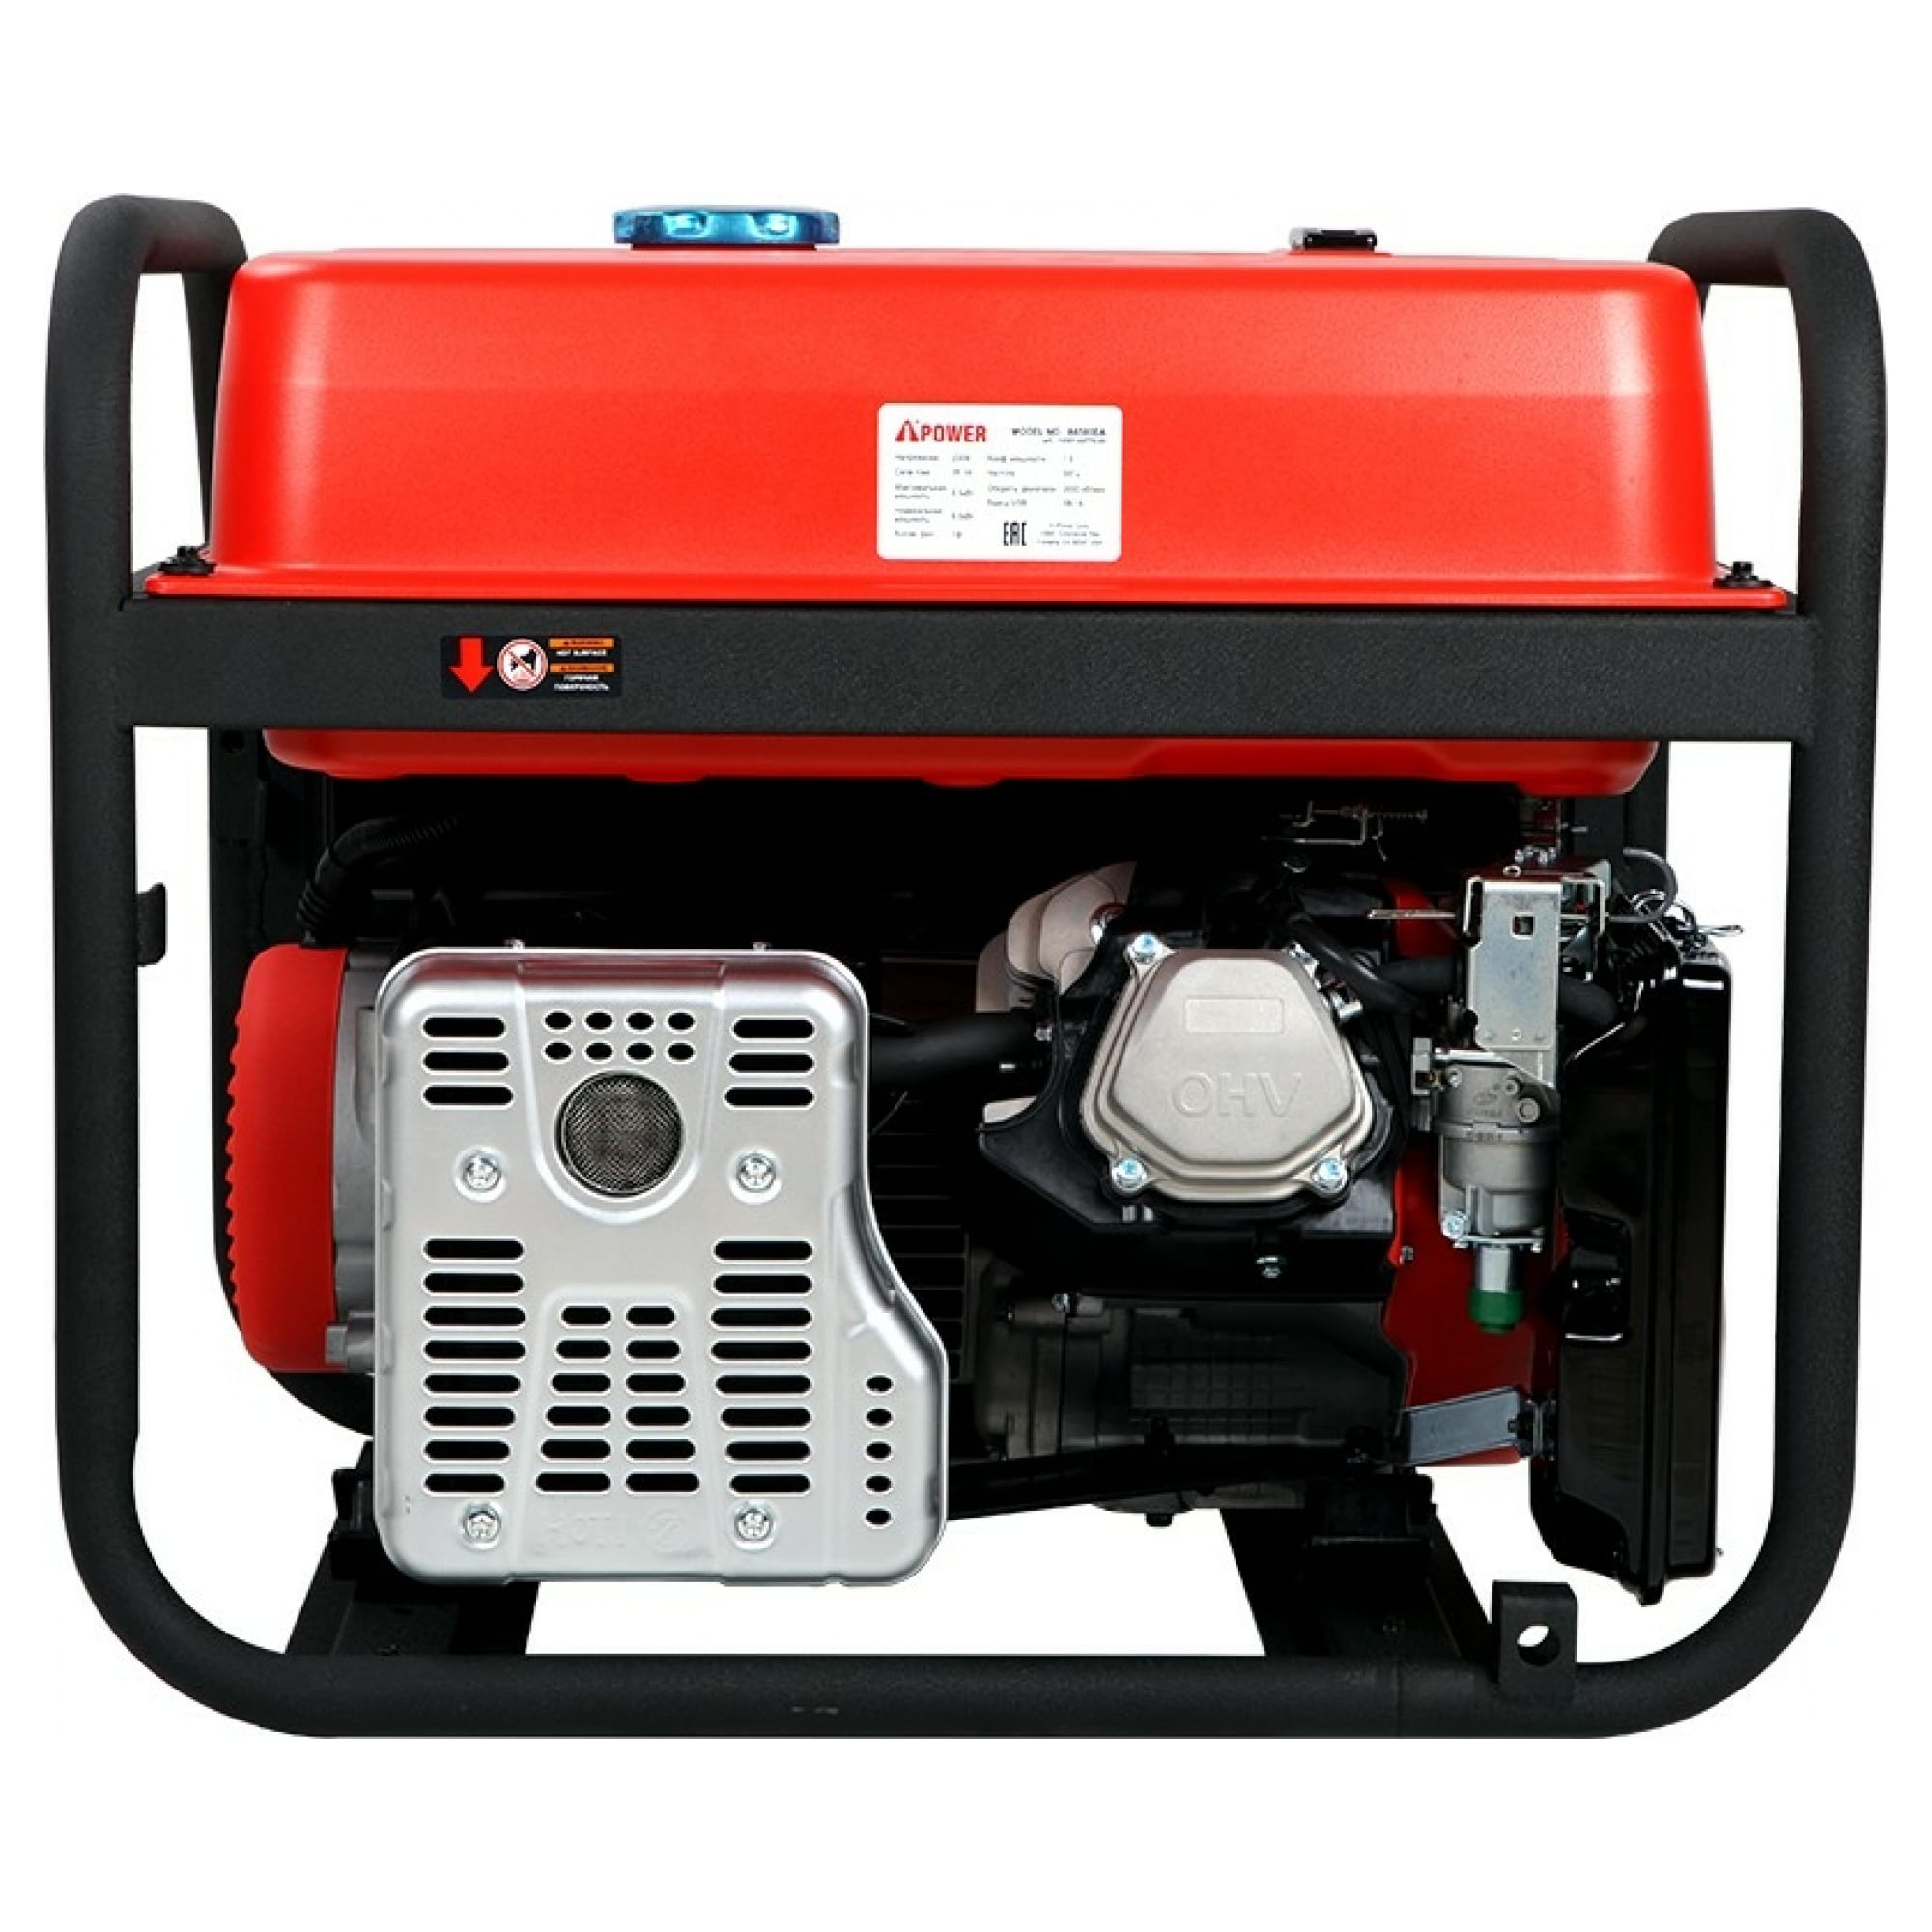 Бензиновый генератор Power с электростартером и ATS 6,5 кВт (A6500EA), цвет красный Е1000 - фото 4